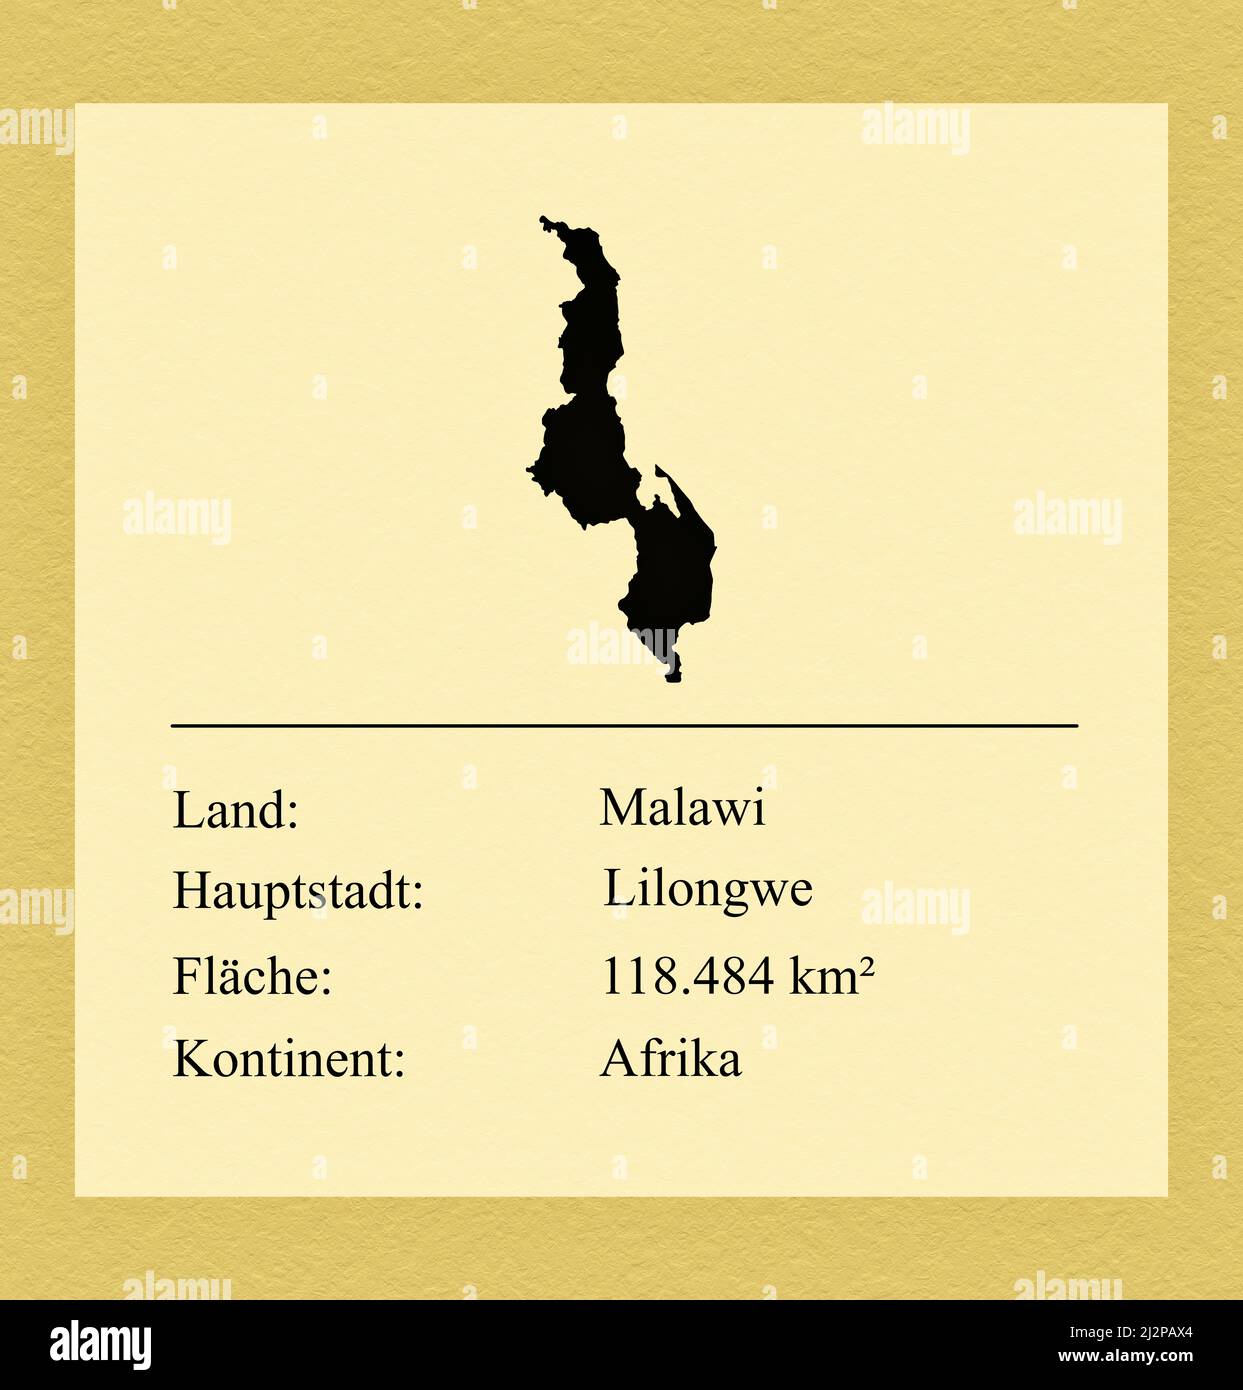 Umrisse des Landes Malawi, darunter ein kleiner Steckbrief mit Ländernamen, Hauptstadt, Fläche und Kontinent Foto de stock